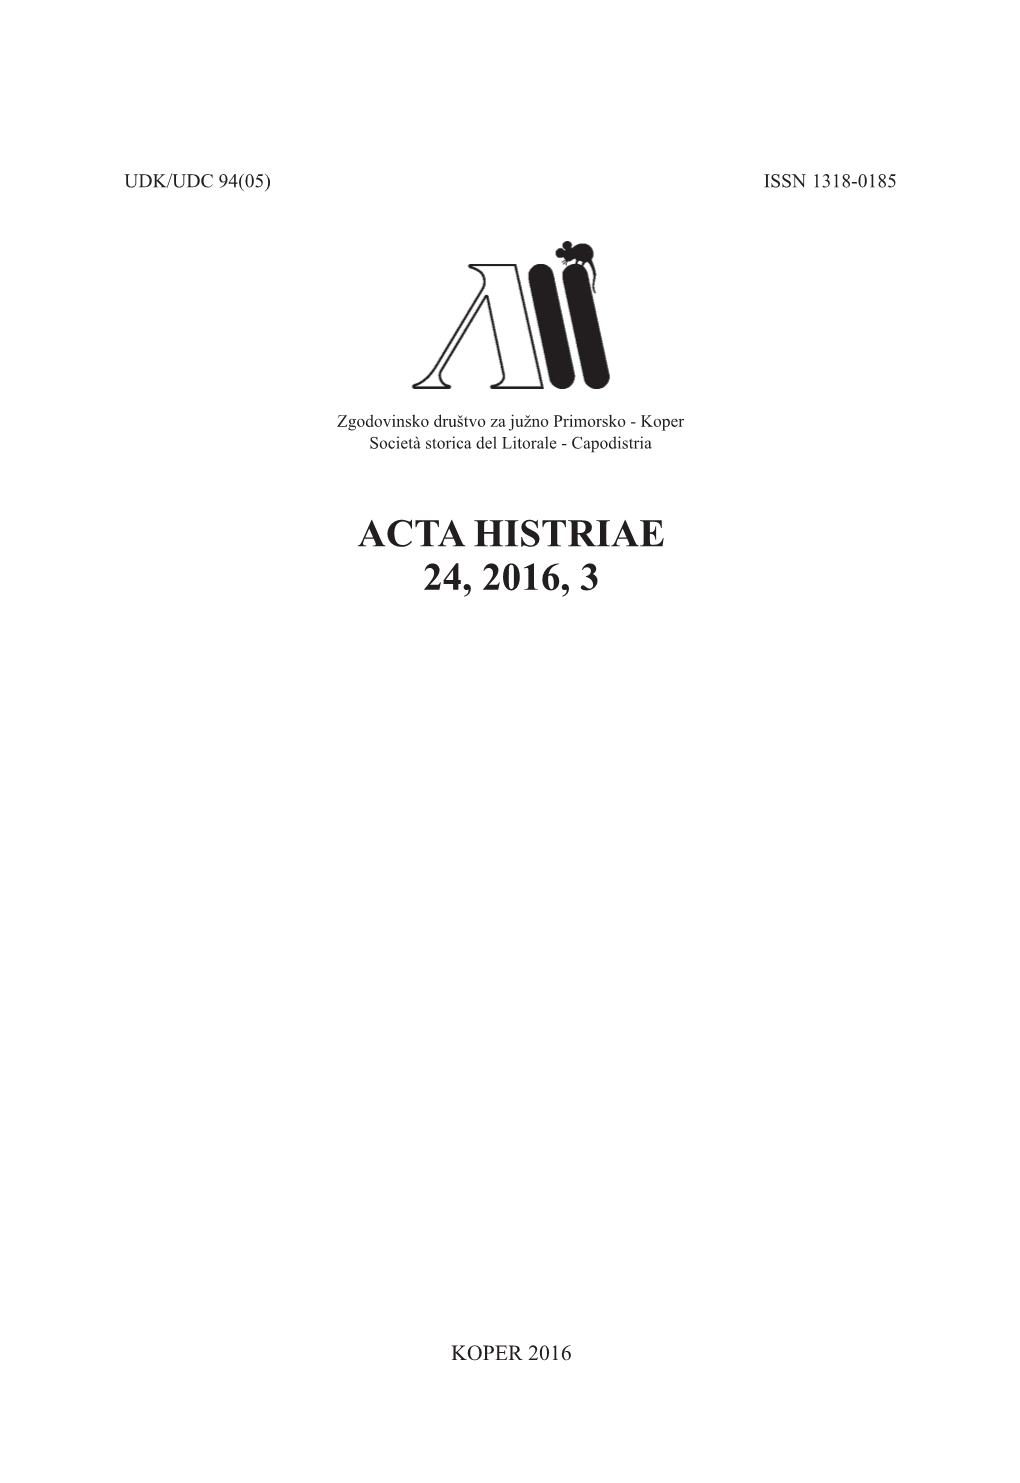 Acta Histriae 24, 2016, 3